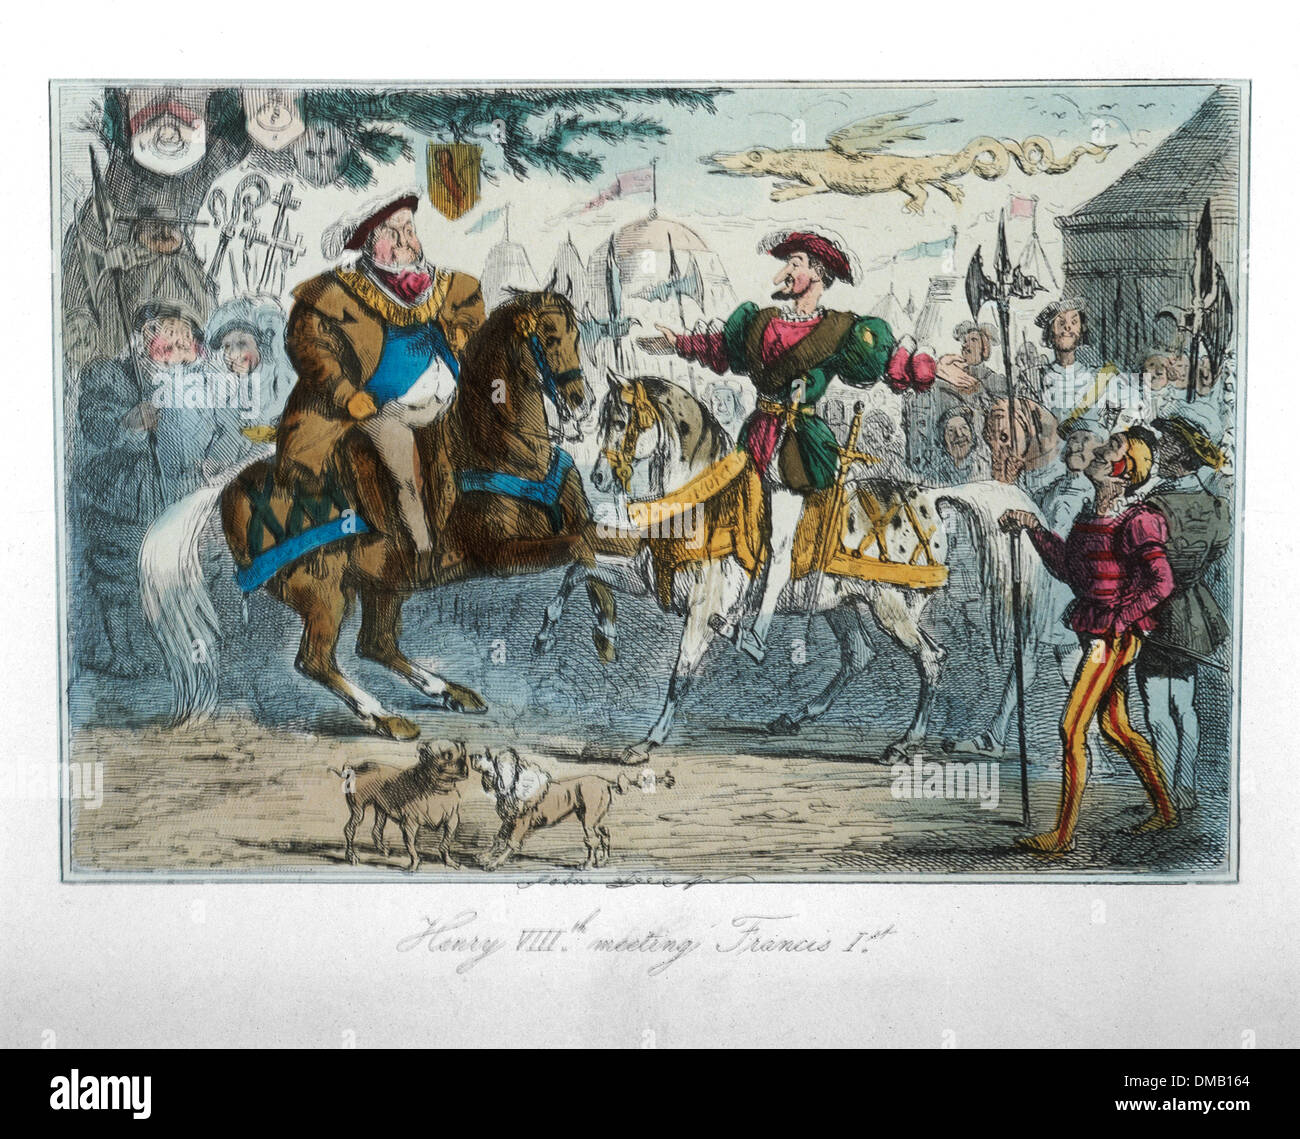 Henry VIII riunione di Francesco I, fumetti storia dell'Inghilterra, attacco colorati da John Leech, 1850 Foto Stock